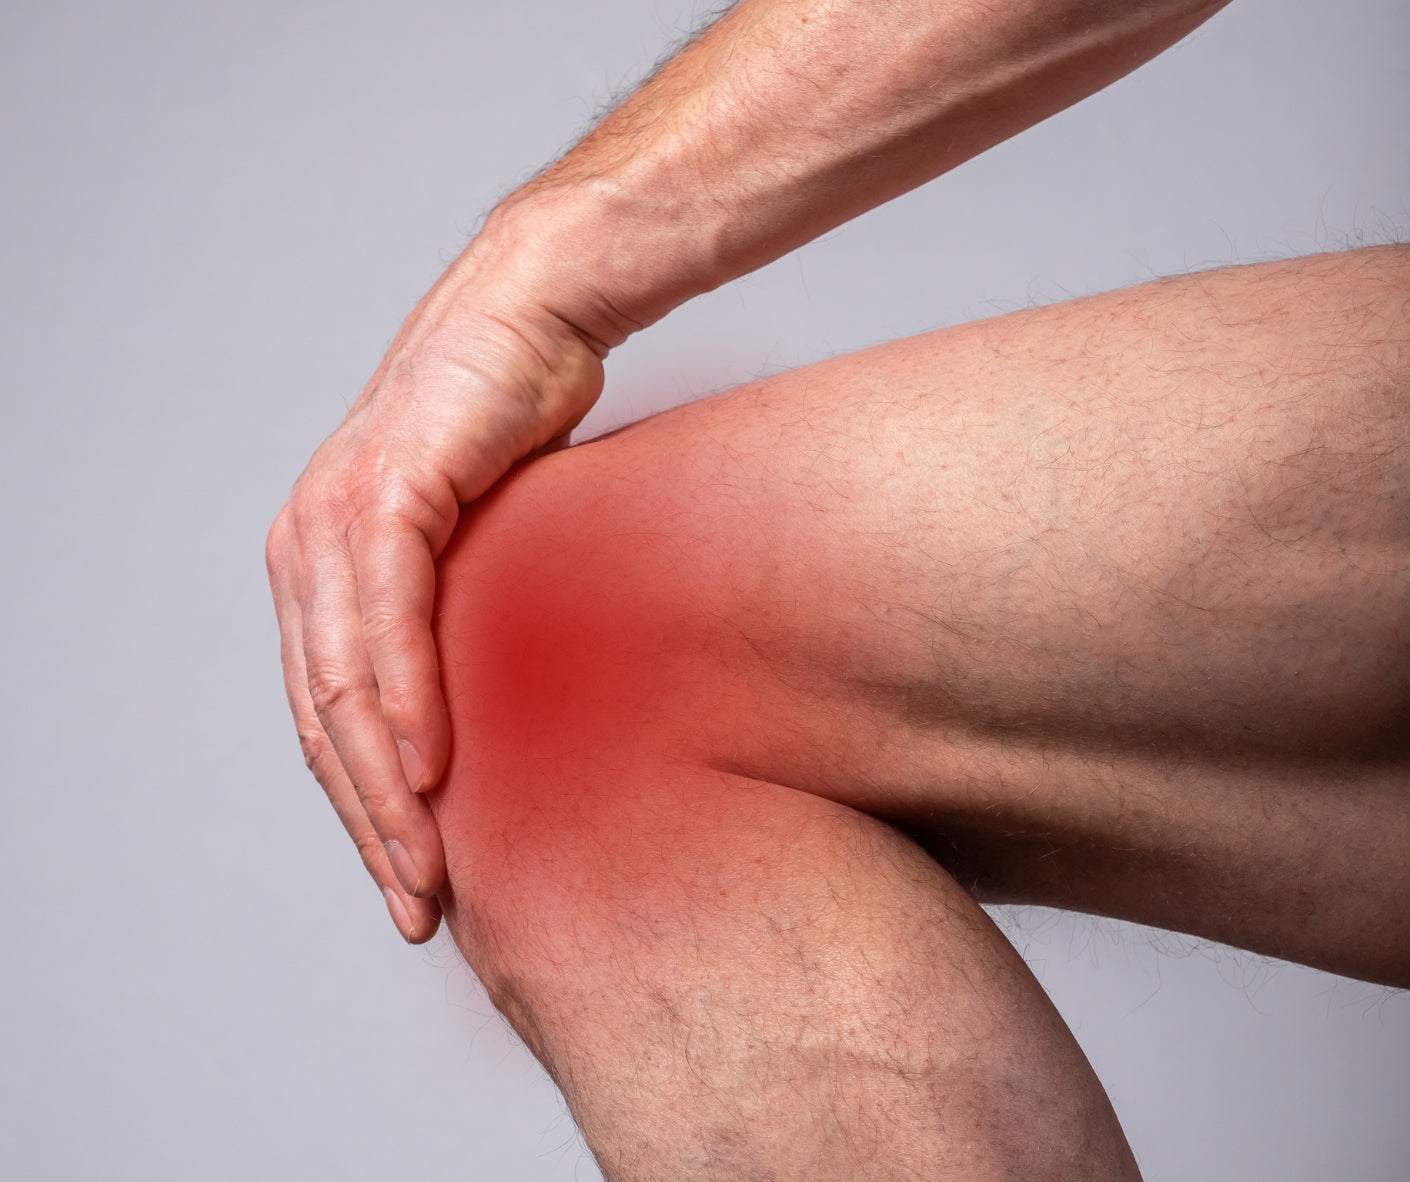 dolor en las articulaciones: artritis, artrosis